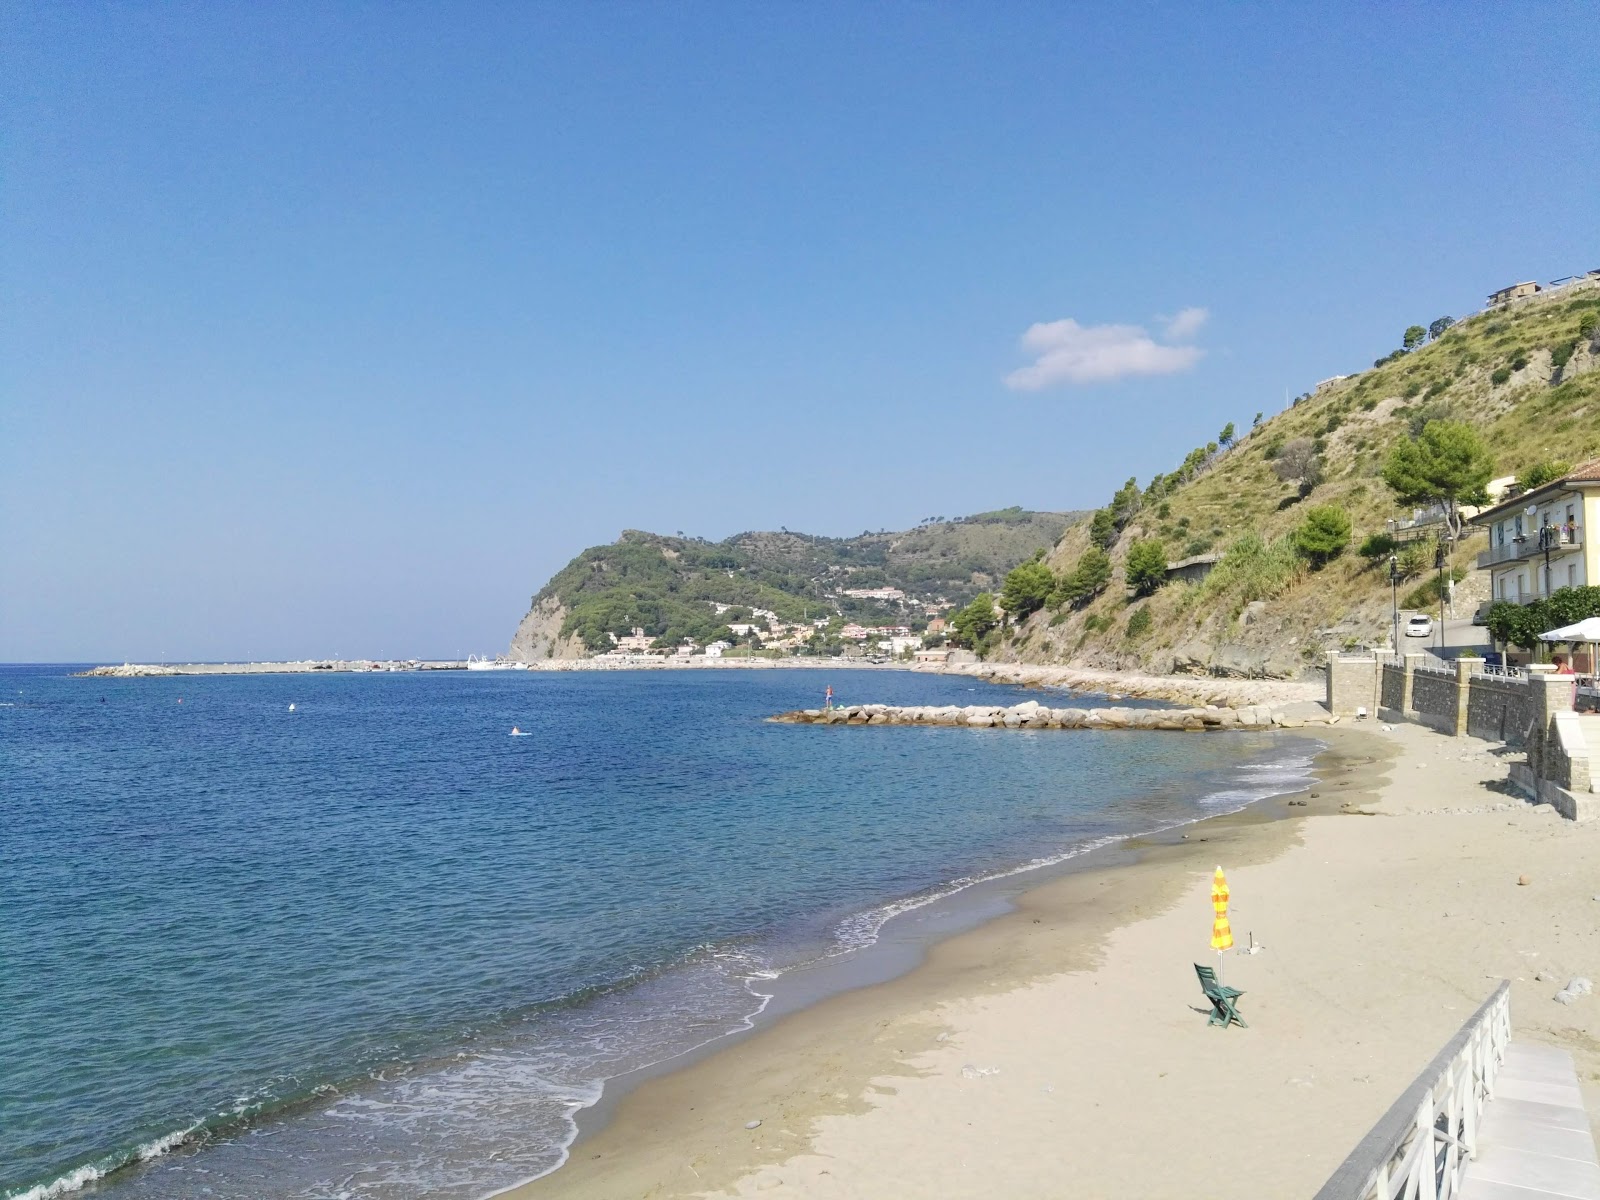 Foto av Marigliano beach med brunsand yta